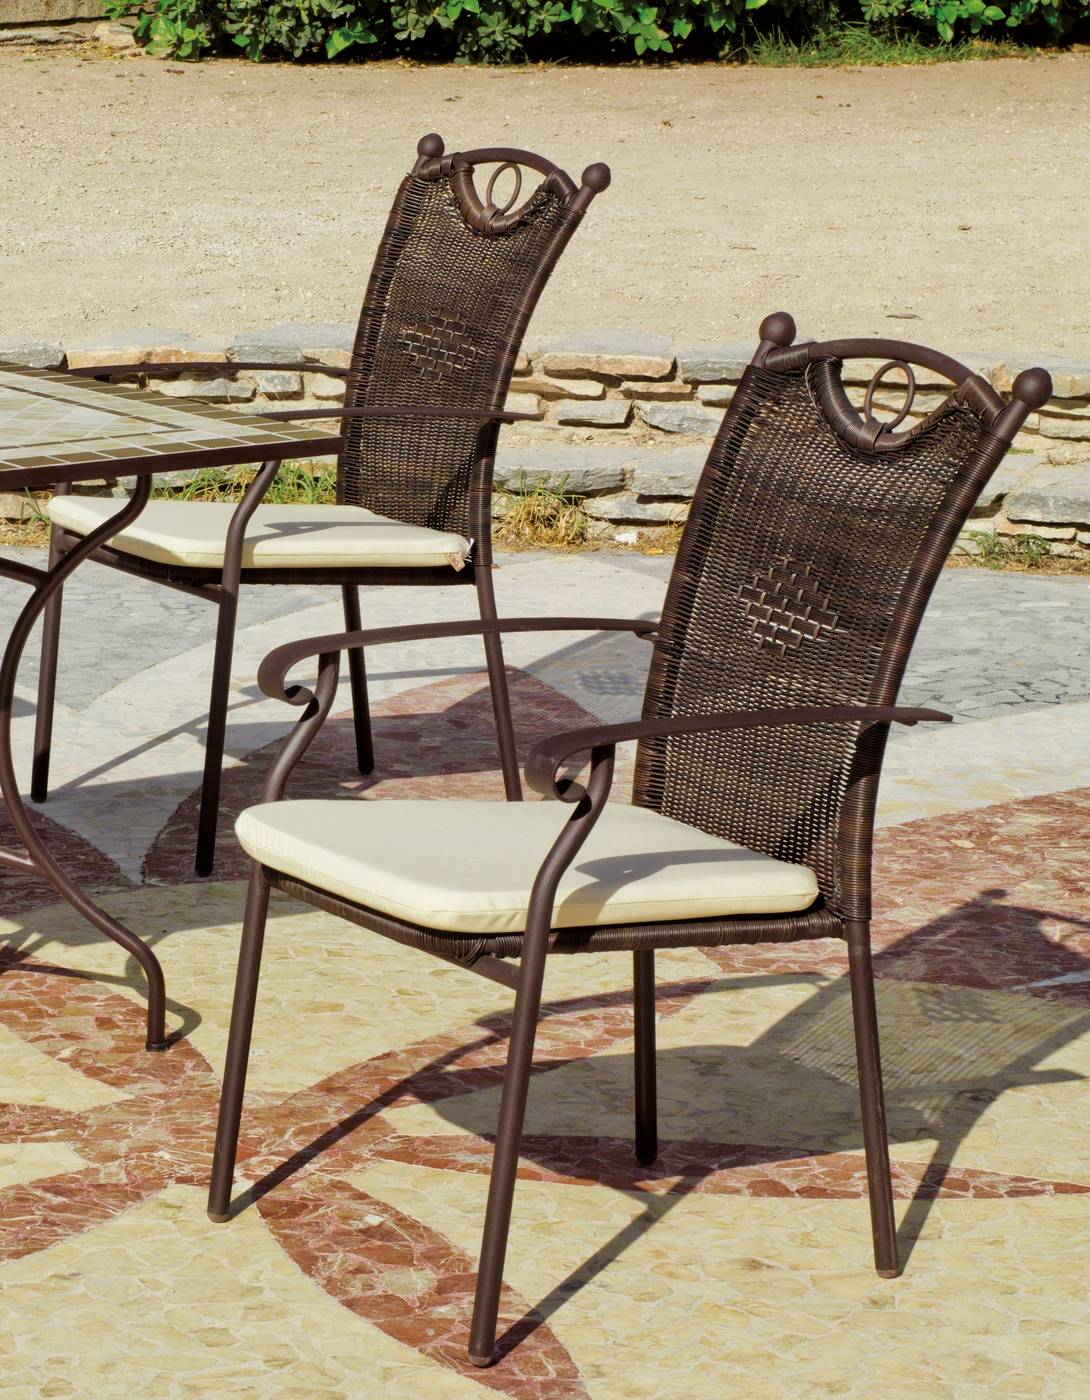 Set Mosaico Dogliani-Beldey 120-6 - Conjunto de forja color bronce: mesa redonda de acero forjado, con tablero mosaico de 120 cm. + 6 sillones de acero y wicker